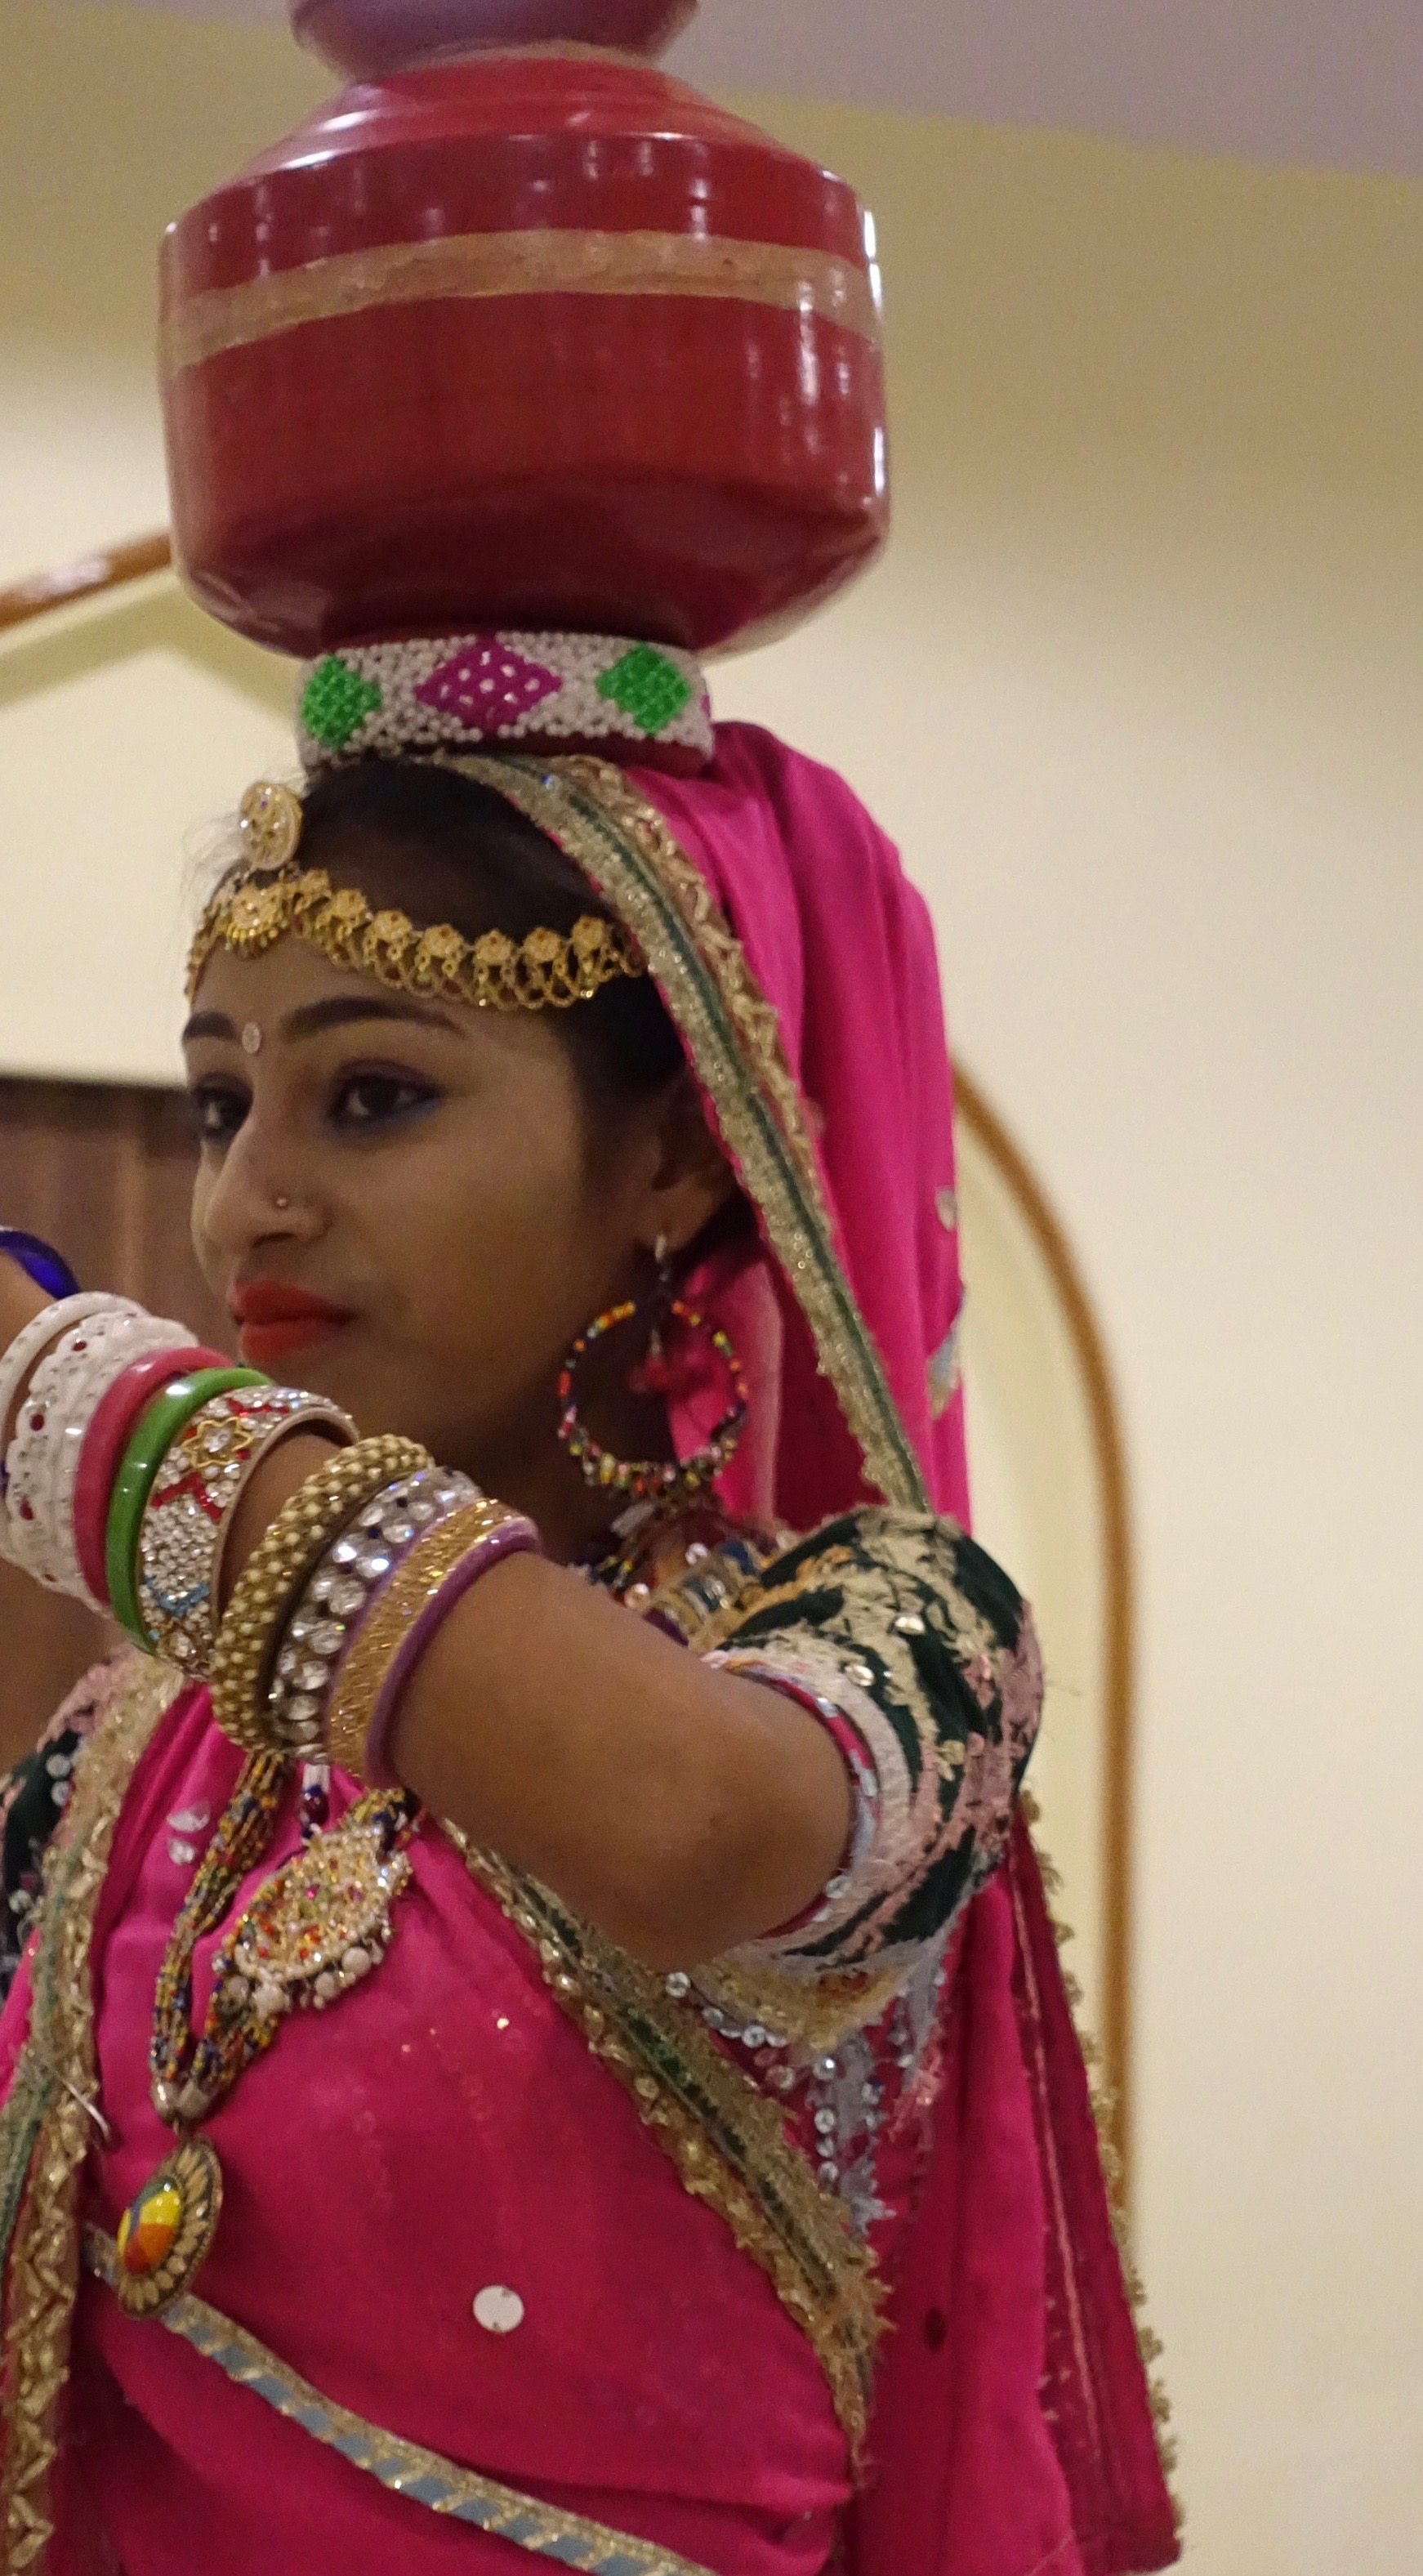 Tradition de la danse au Rajasthan. Cette jeune fille là avait quelque chose de très moderne dans l'attitude et le regard